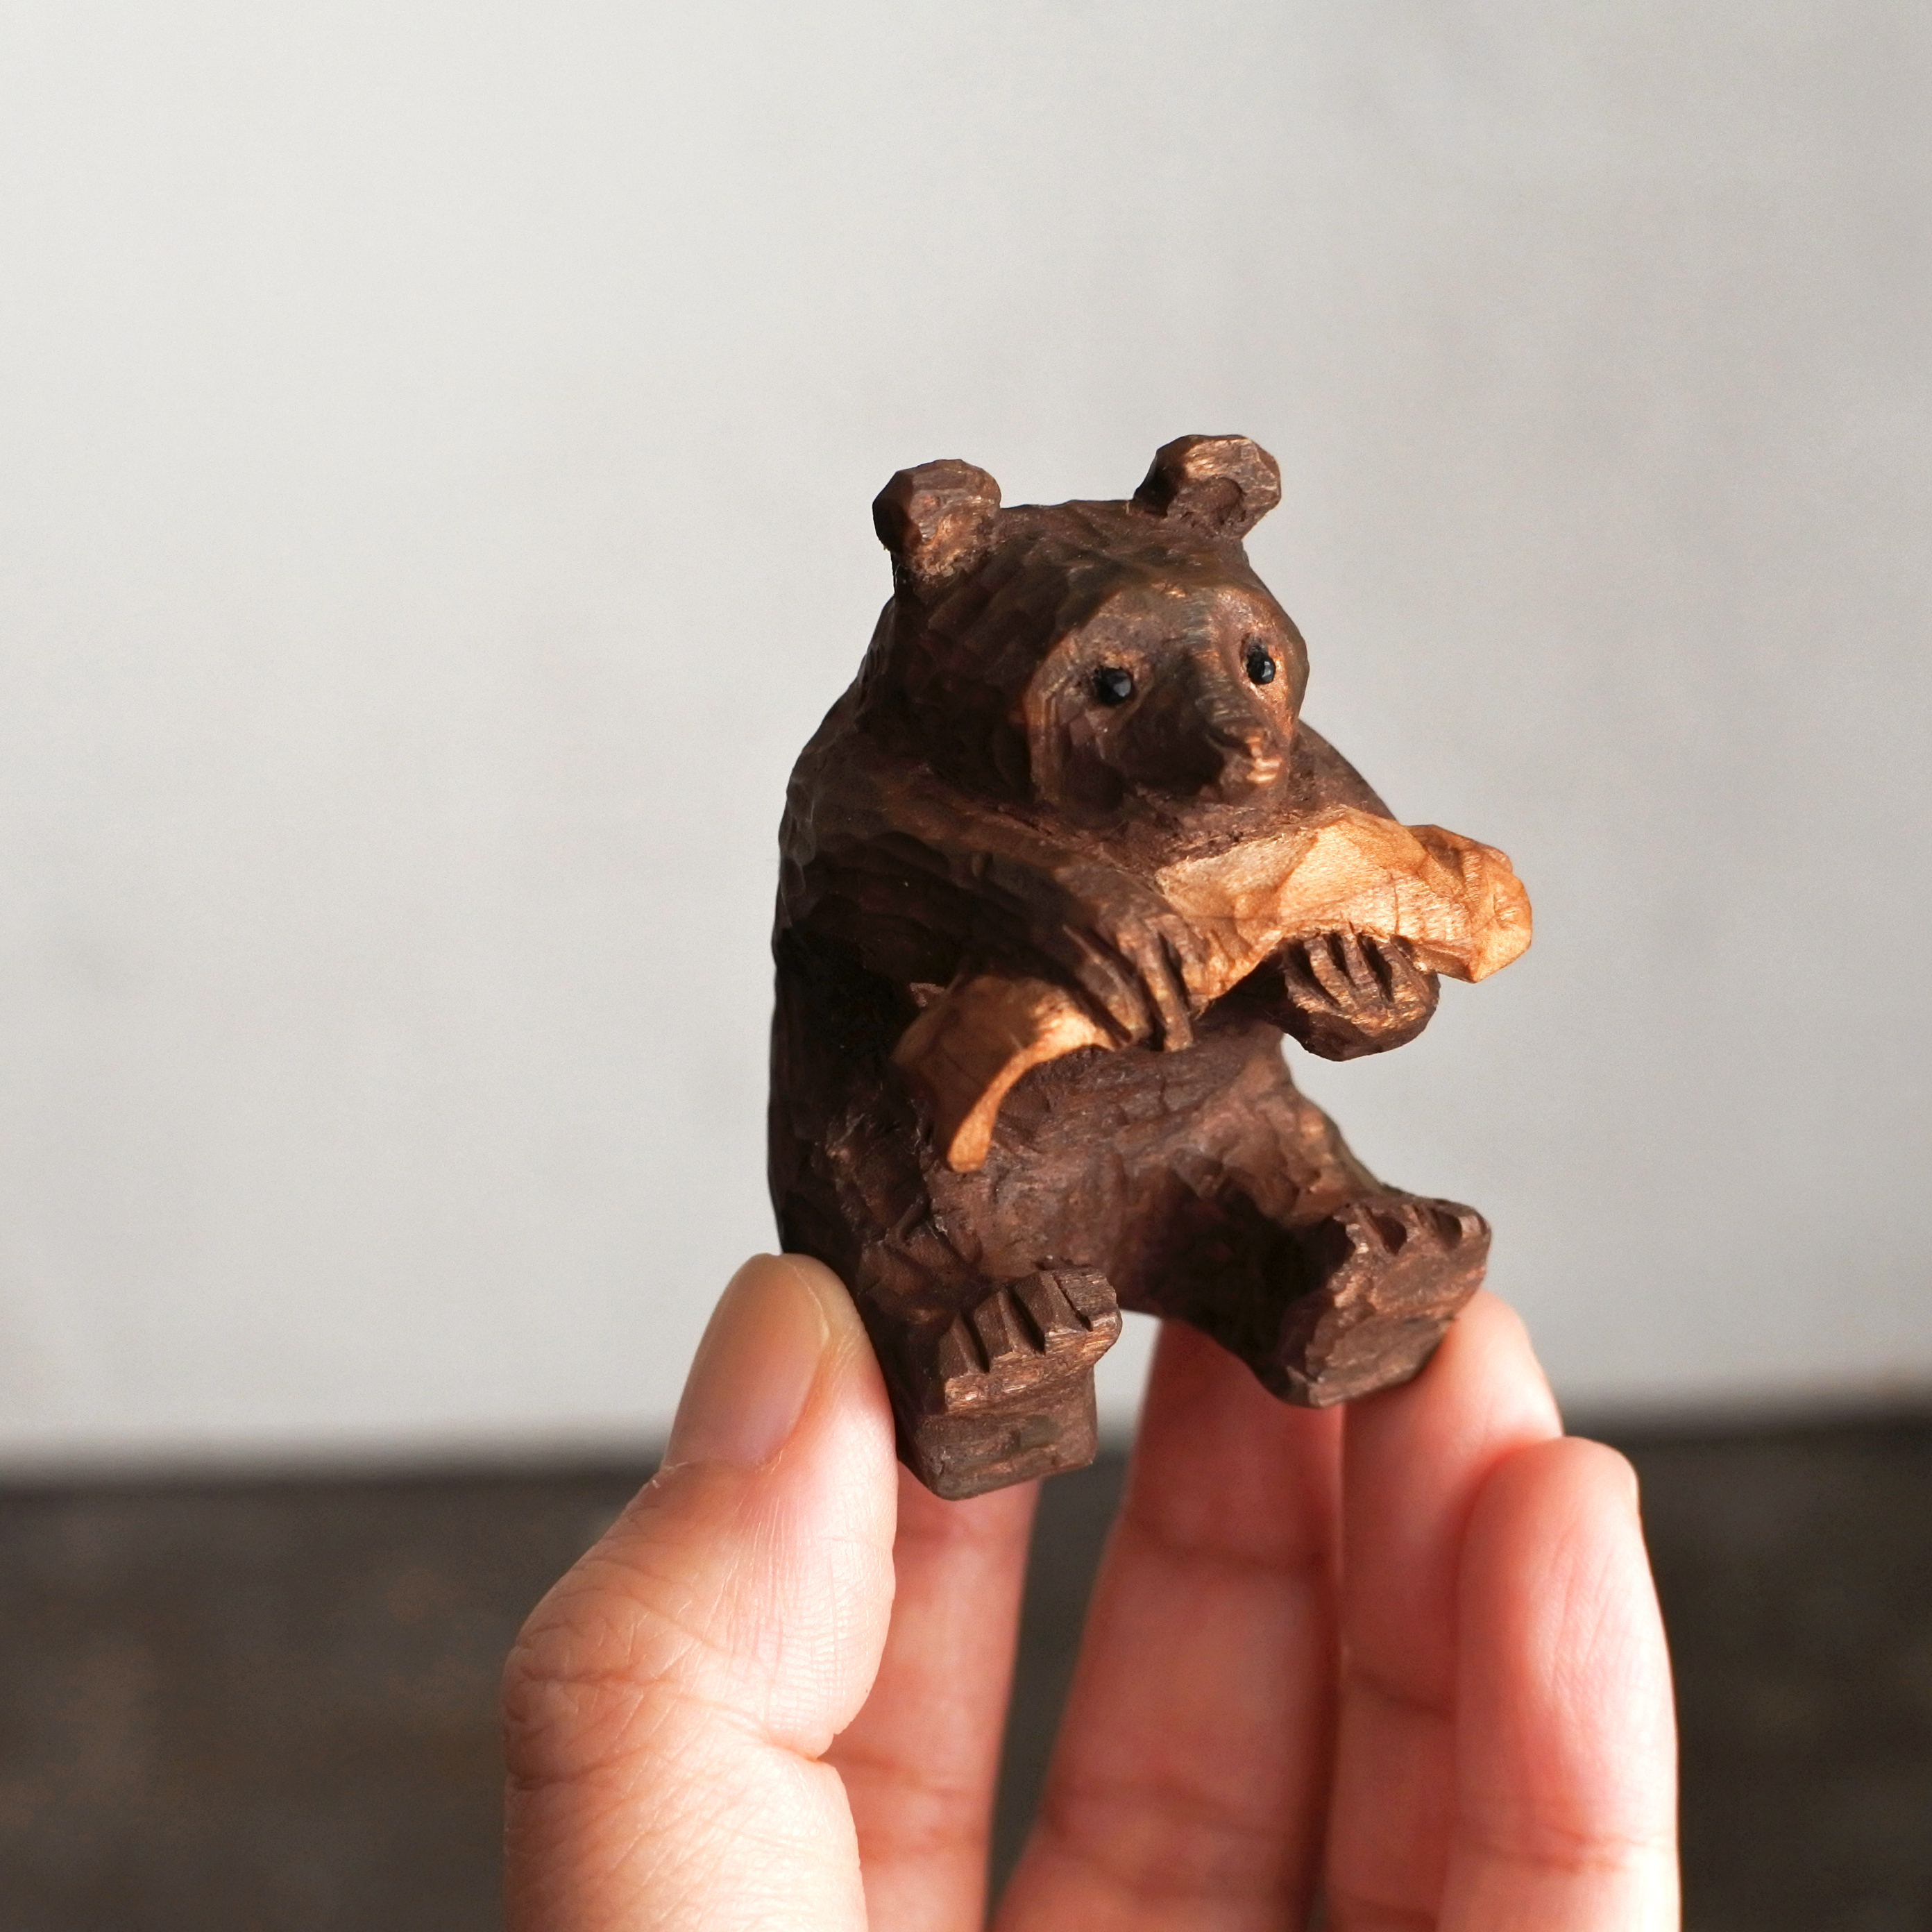 Mokuji 木彫りの熊の全身タイプも是非彫ってください とリクエストたくさん頂きましたので また合間を縫って彫っていきたいと思います 年末までは手が空かない雰囲気なので 新年から徐々に こちらは以前彫った習作 つぶらな瞳がかわいい